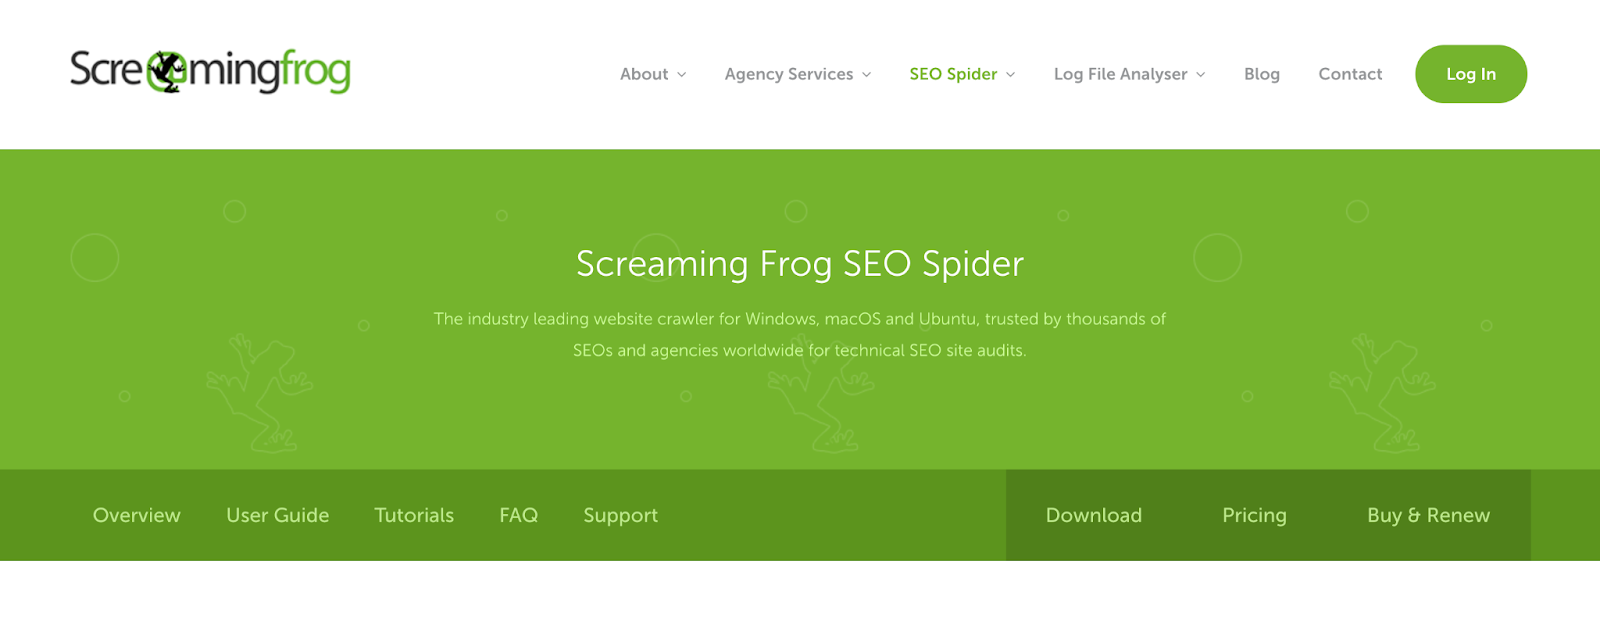 Beste SEO tools 2022: Screaming frog website